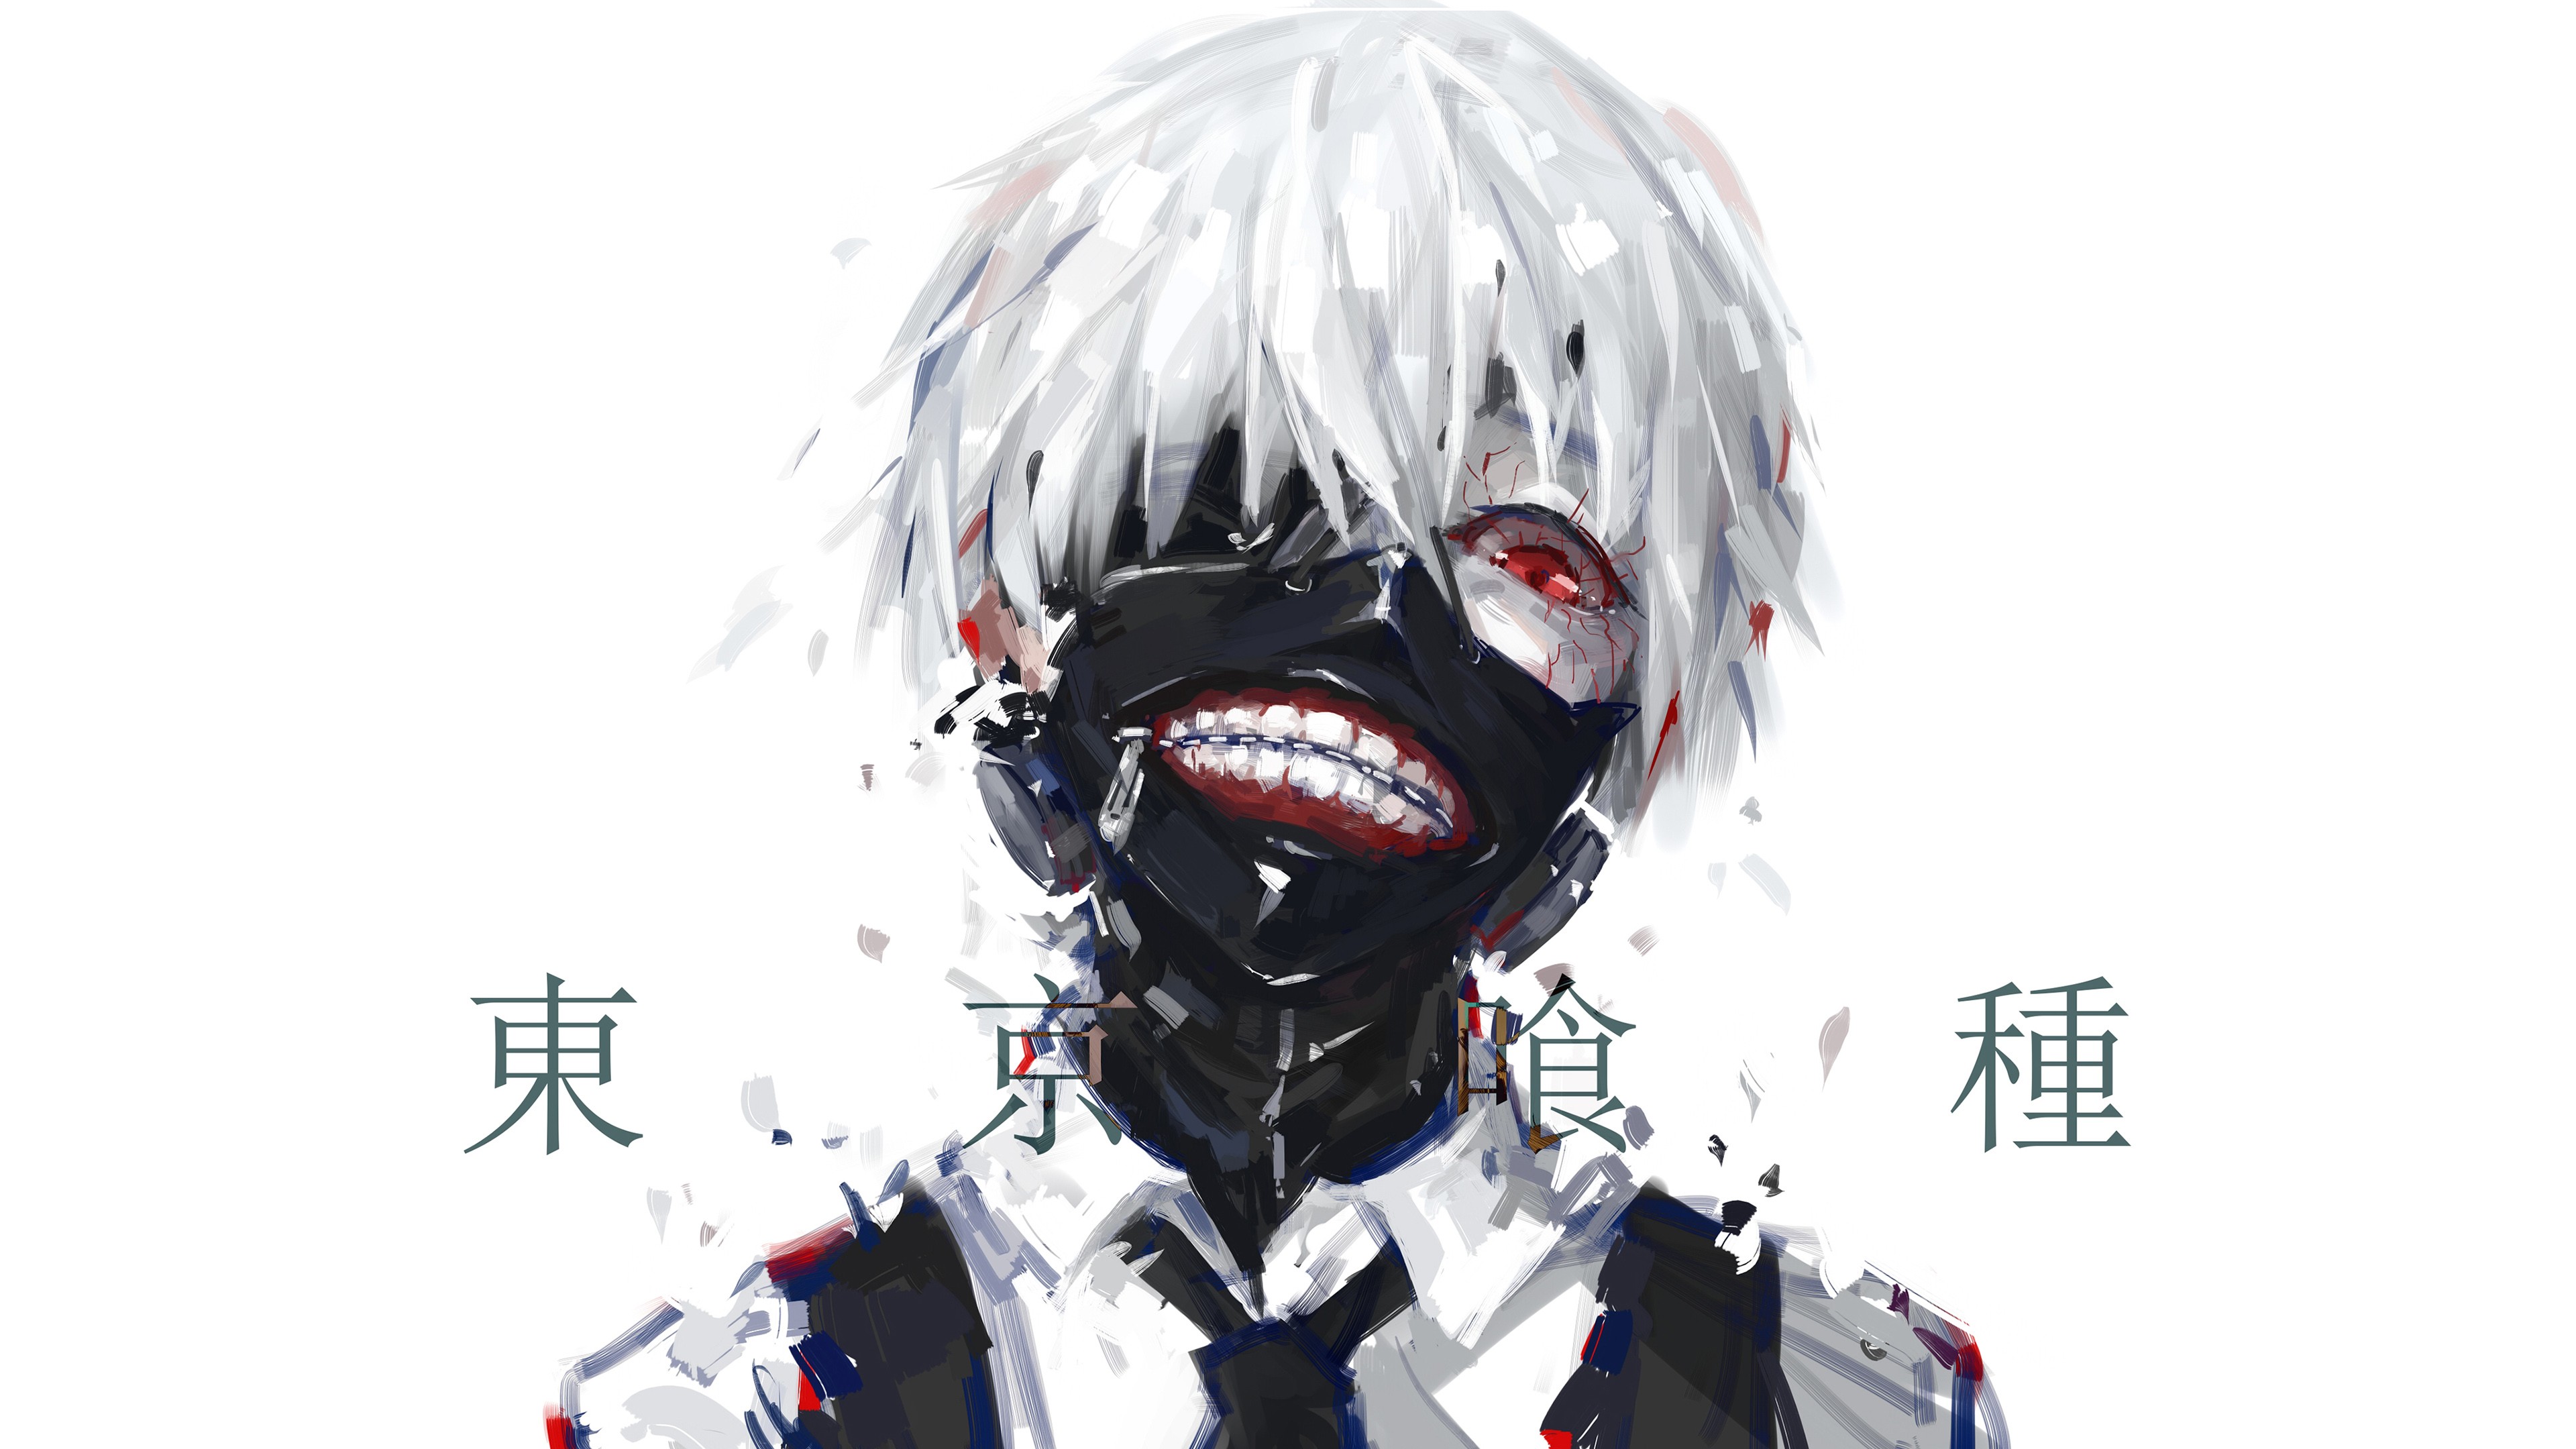 Anime 3840x2160 anime Tokyo Ghoul Kaneki Ken face mask white background red eyes looking at viewer anime boys